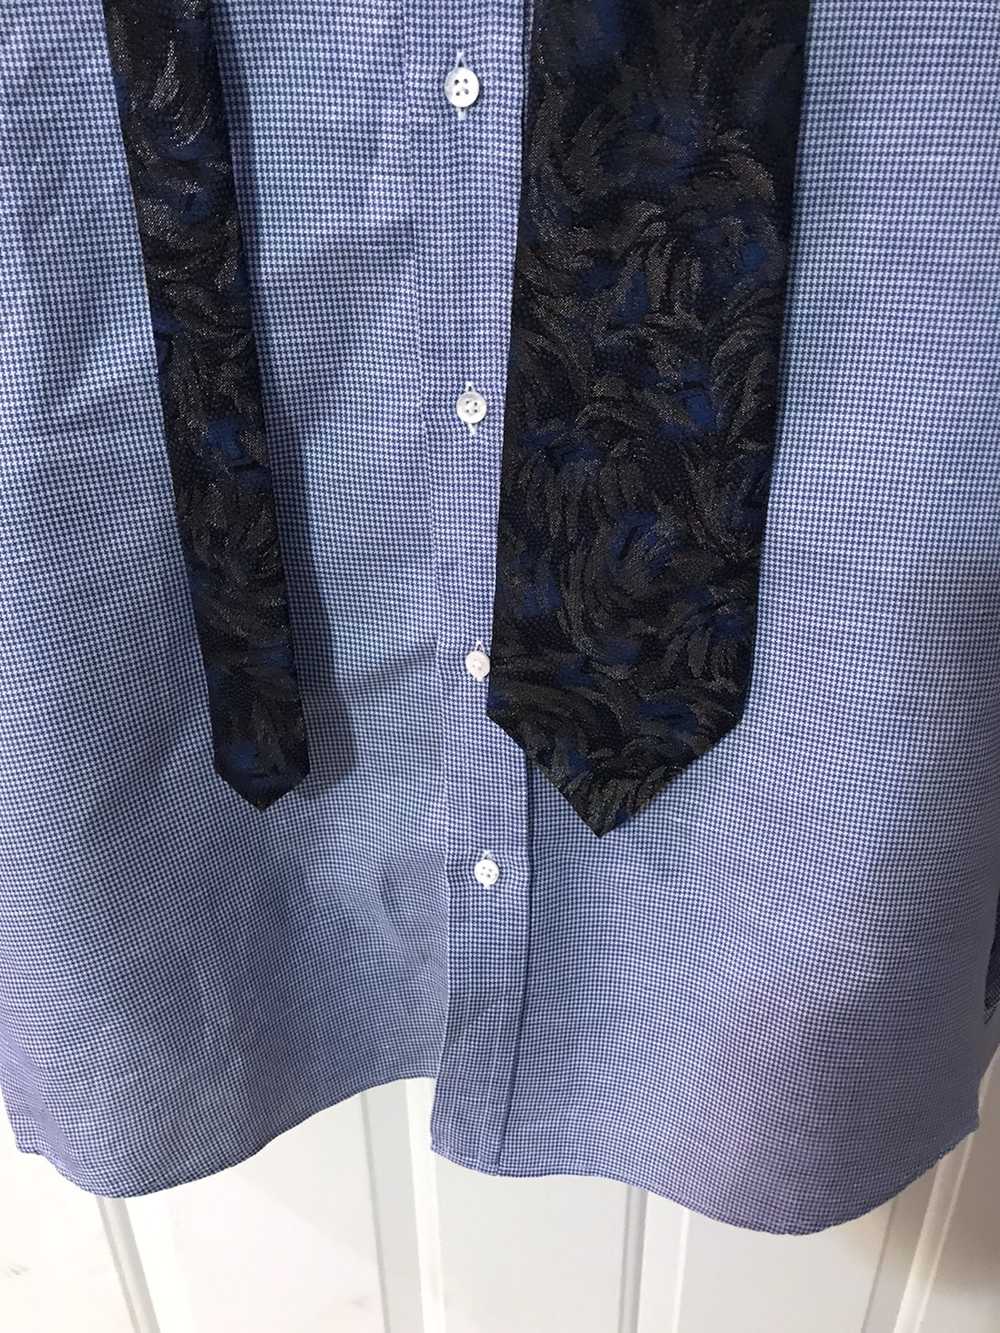 Fendi Floral shimmer silk tie (Royal,Grey, Black) - image 3